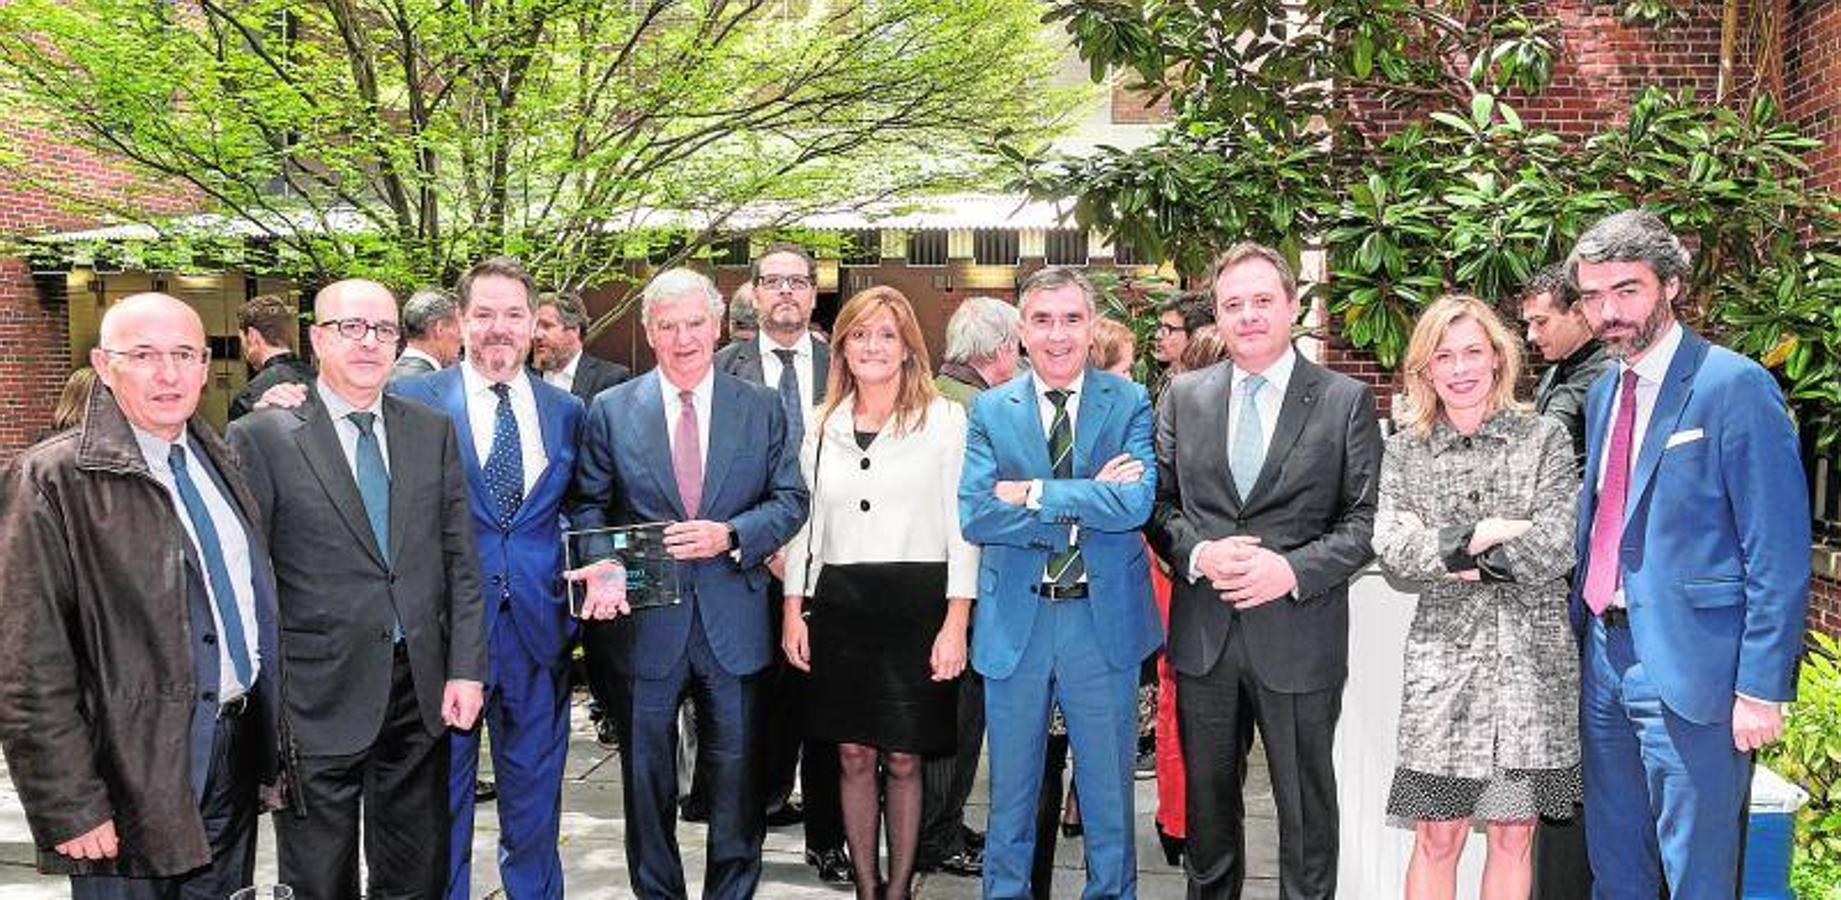 Directivos del Grupo Vocento posan con el premio "First Amendment Award" otorgado por Eisenhower Fellows España al término de una ceremonia en el Instituto Cervantes de Nueva York el 8 de mayo de 2017